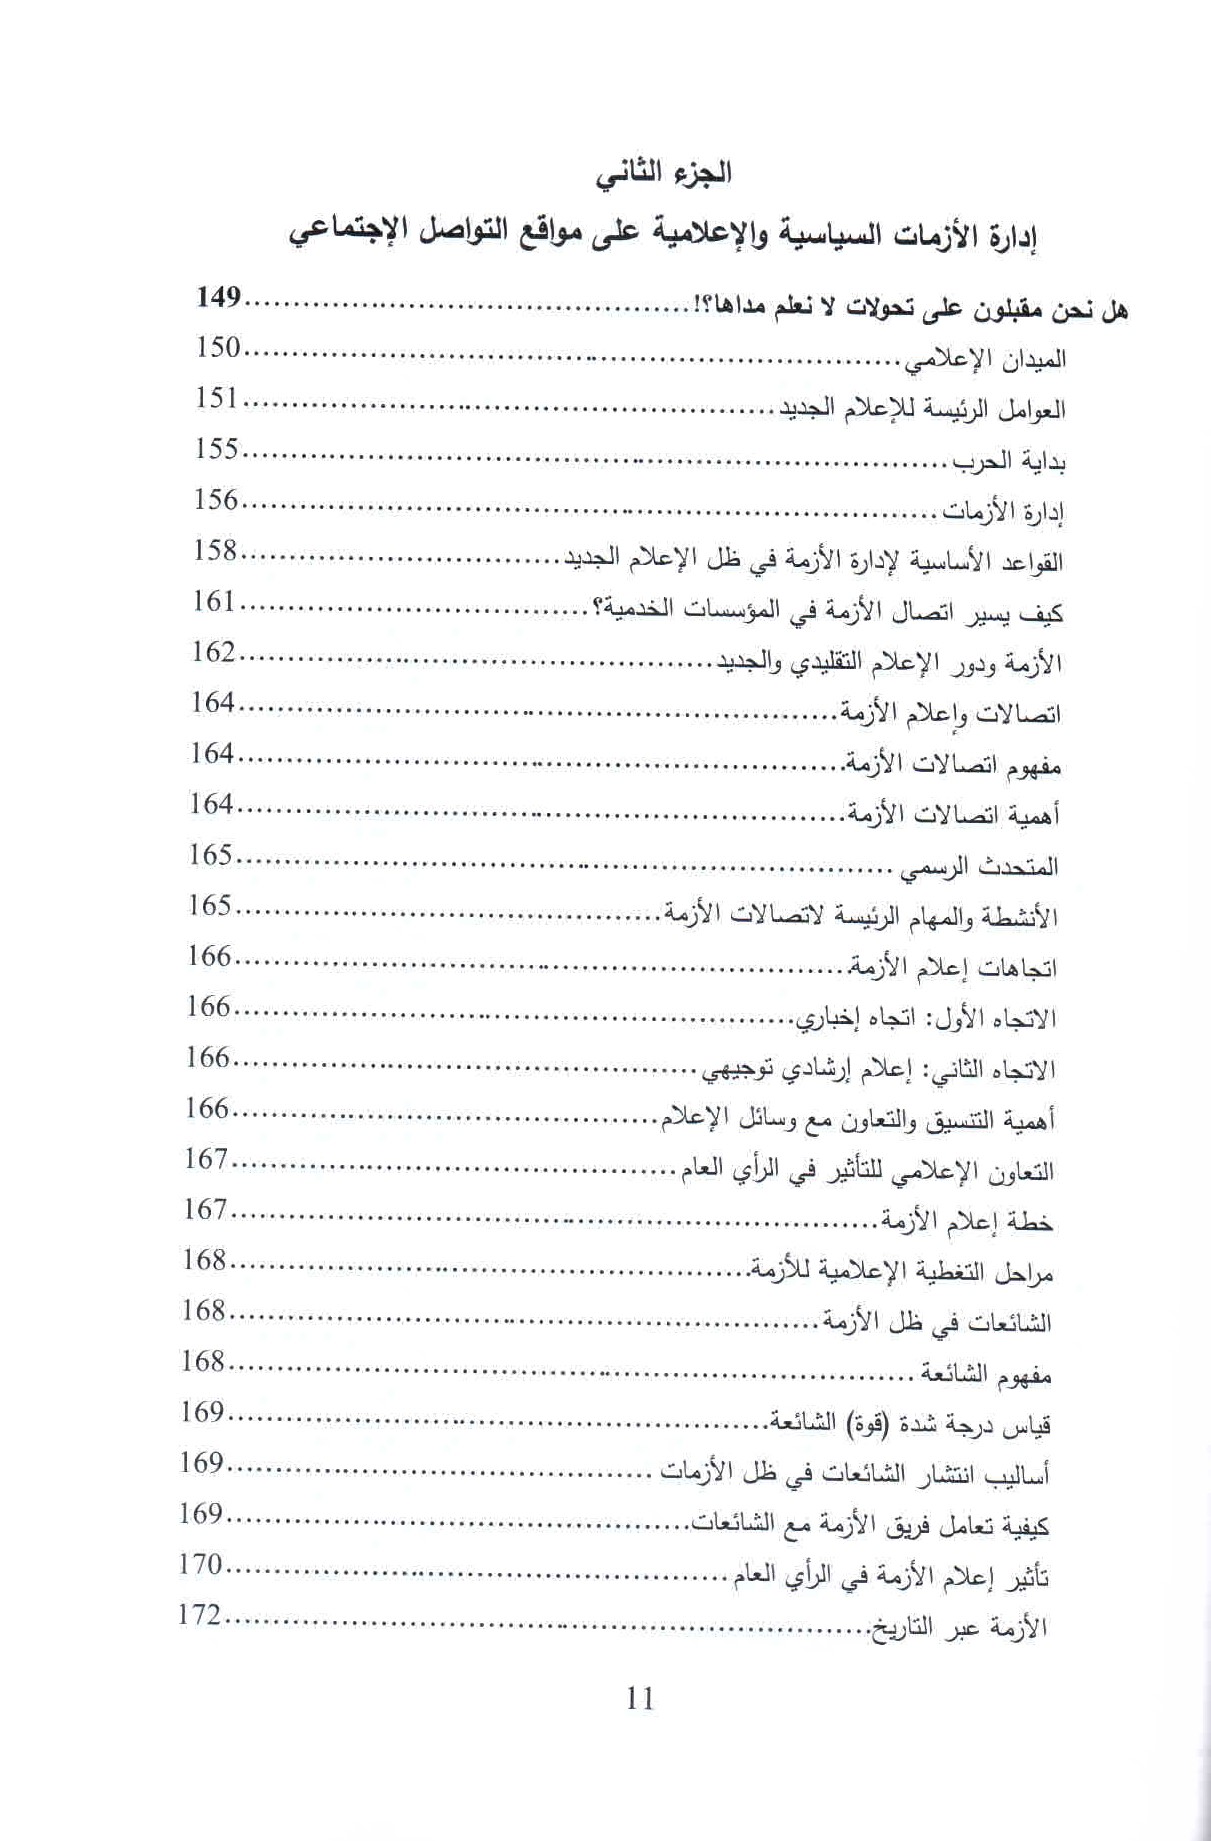   قائمة محتويات كتاب الإدمان الرقمي ص. 11